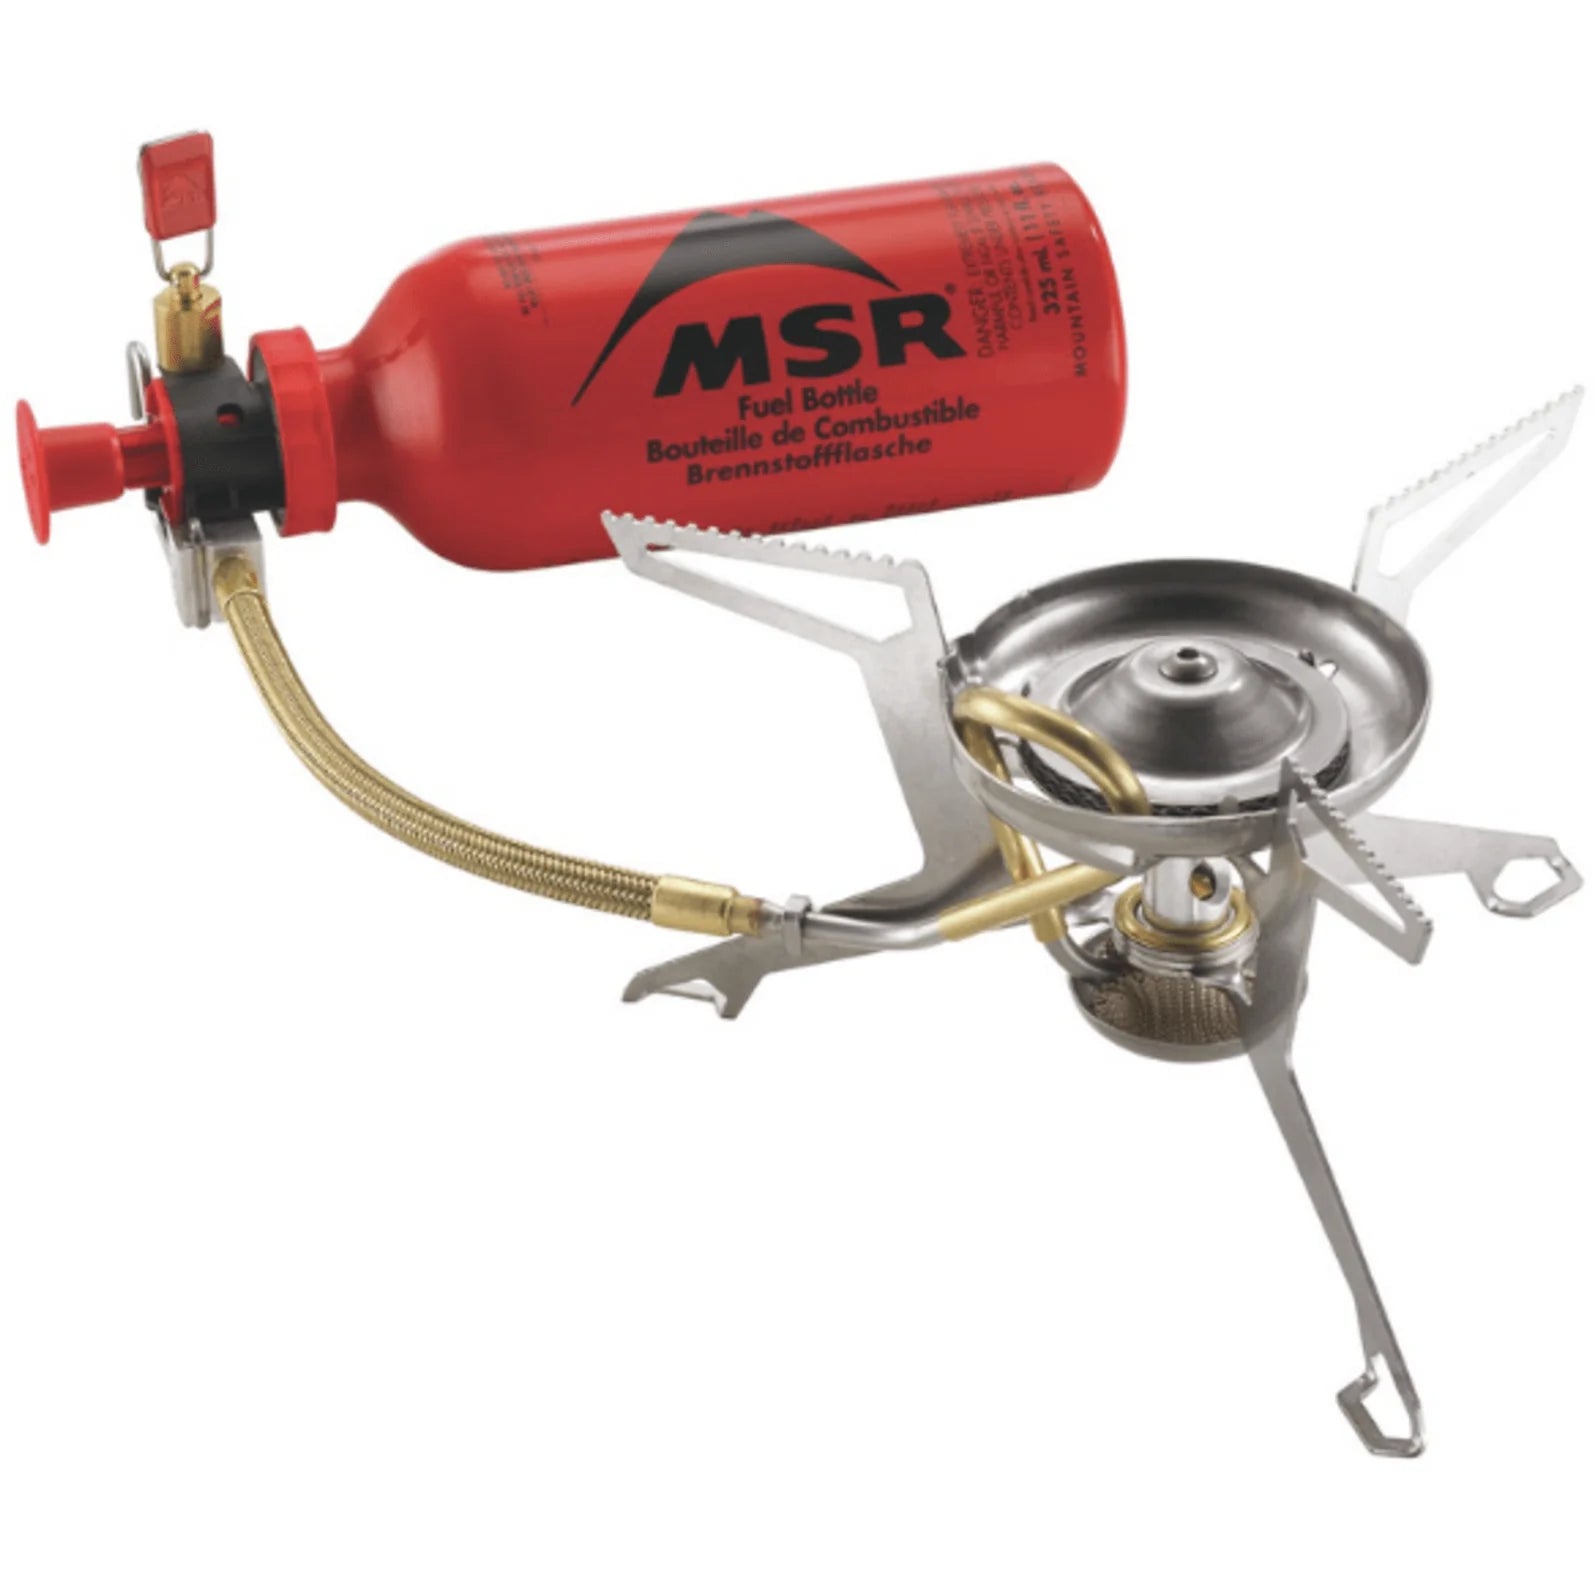 msr-msr-whisperlite-international-muli-fuel-stove.webp__PID:d91b7617-911c-454f-af45-c969945d8768